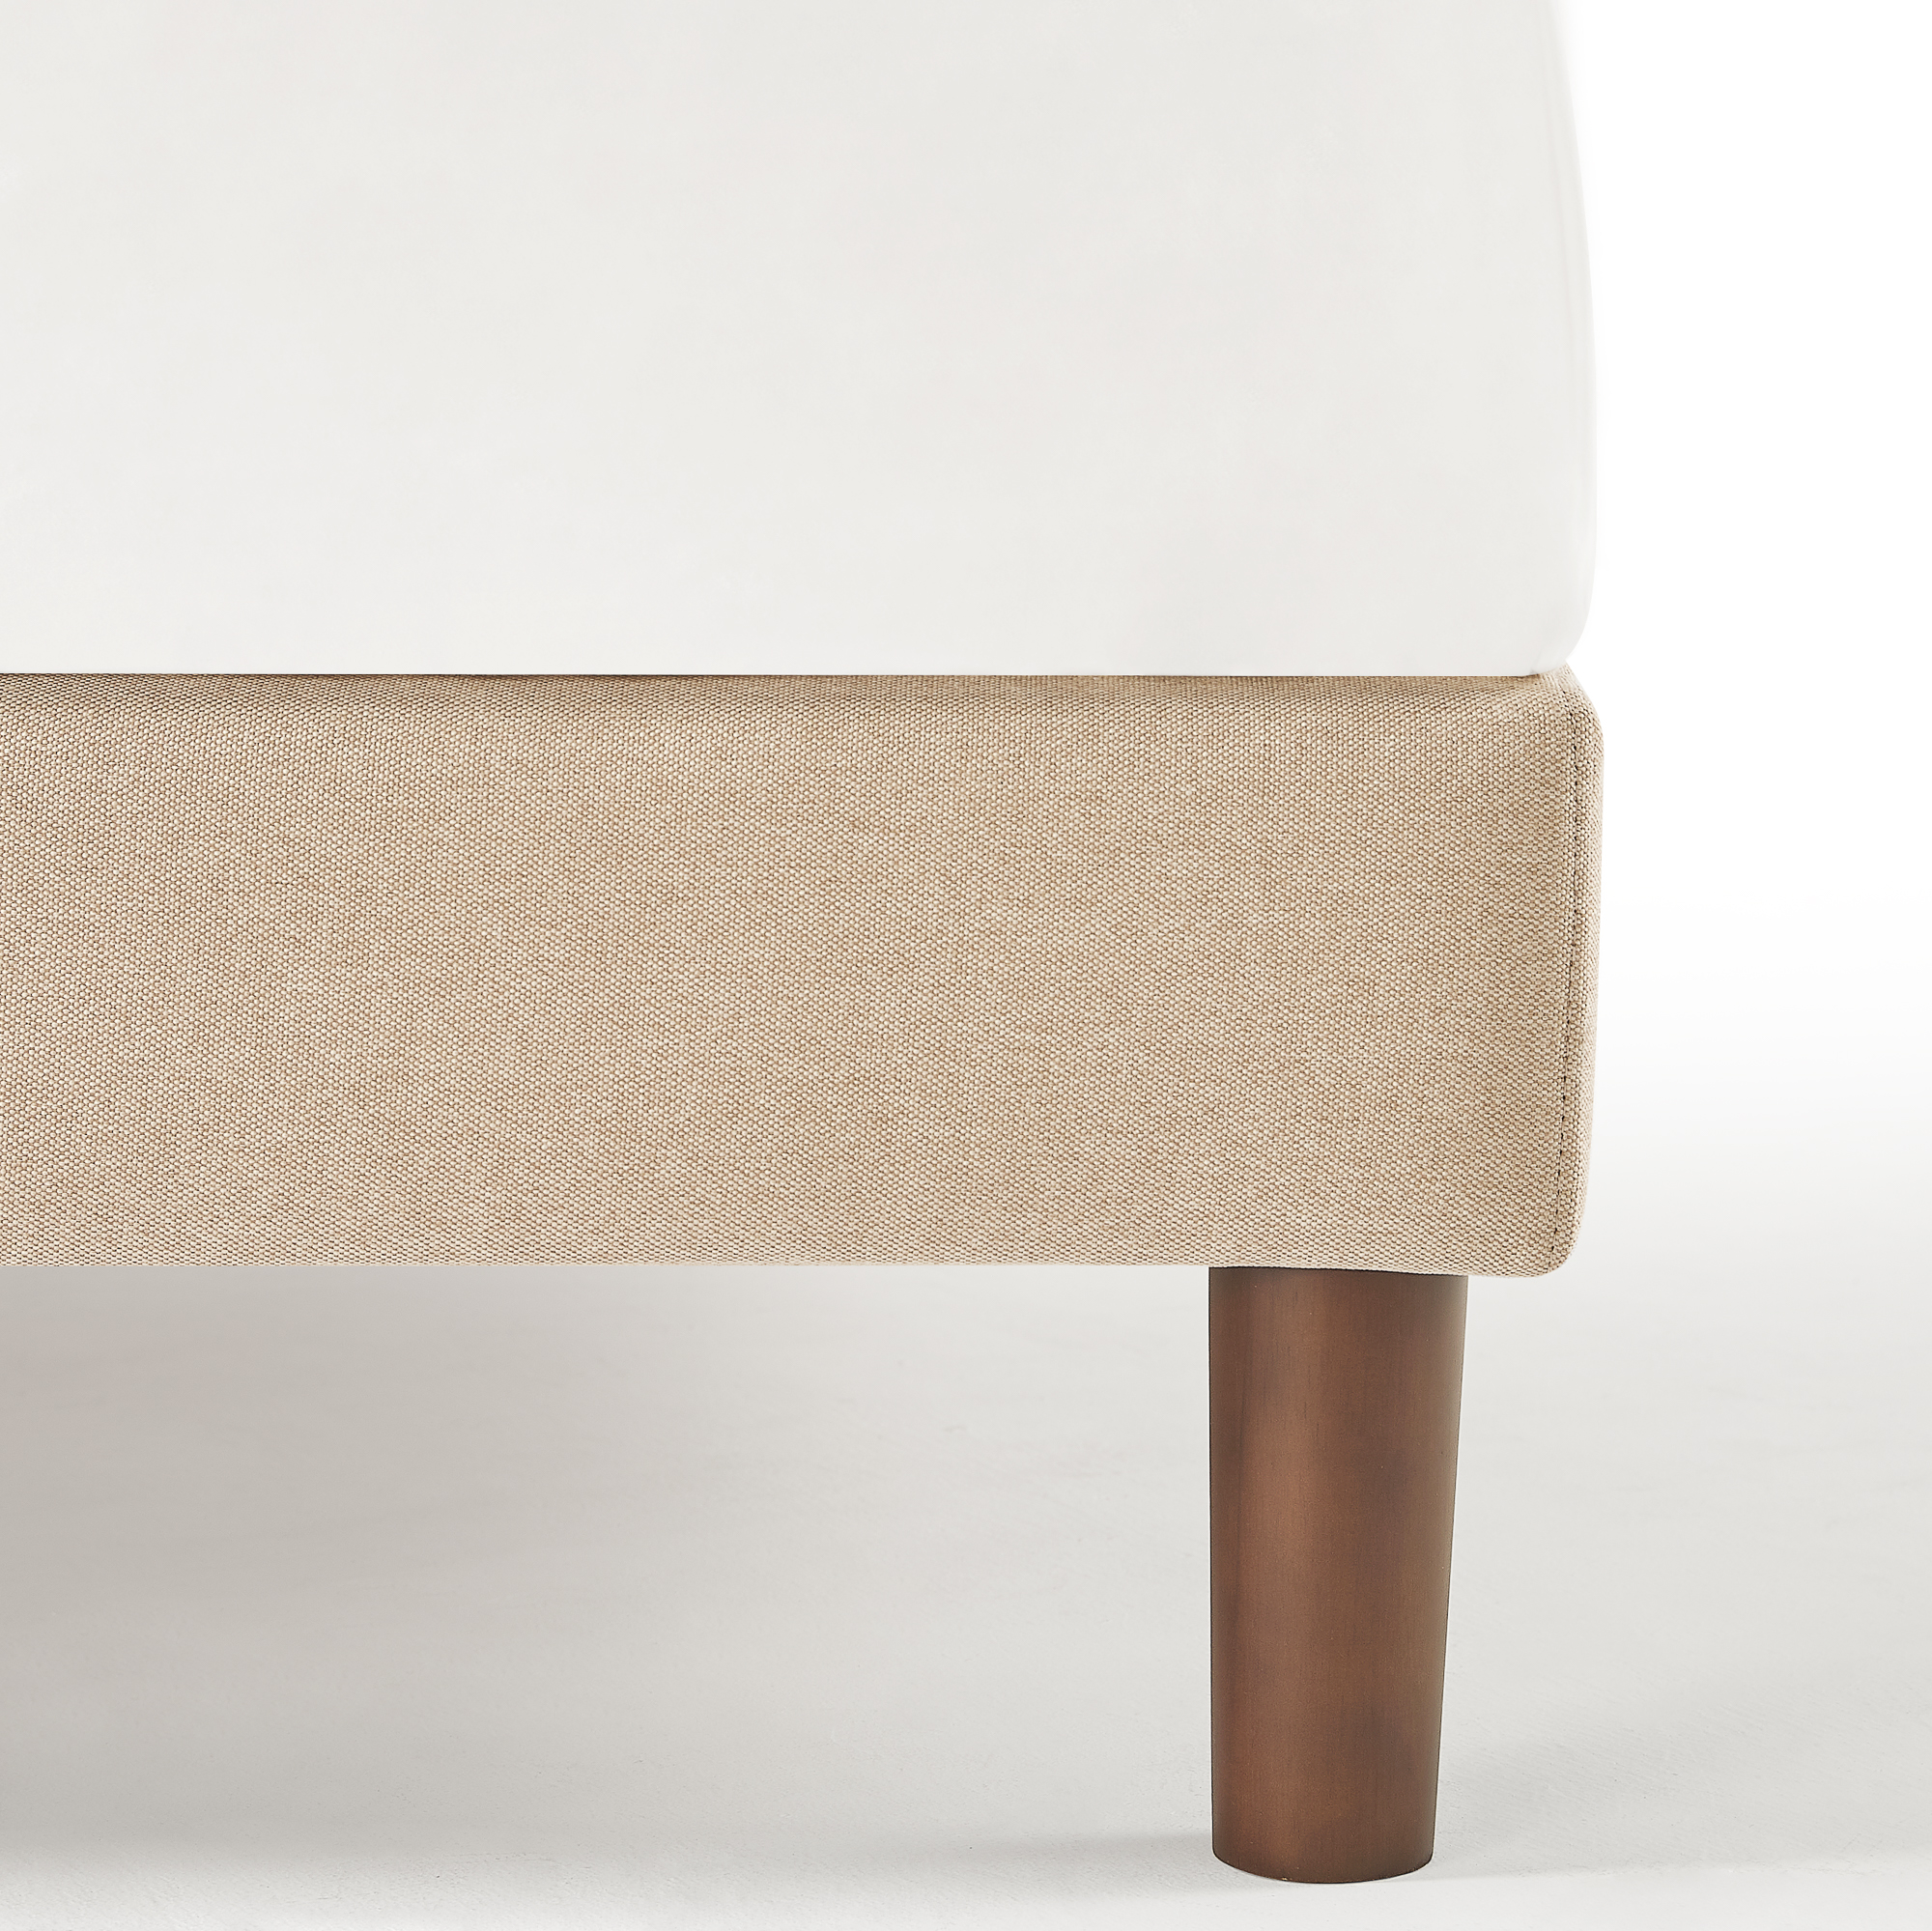 Zinus Debi 51” Upholstered Platform Bed Frame, Full, Beige - image 4 of 9